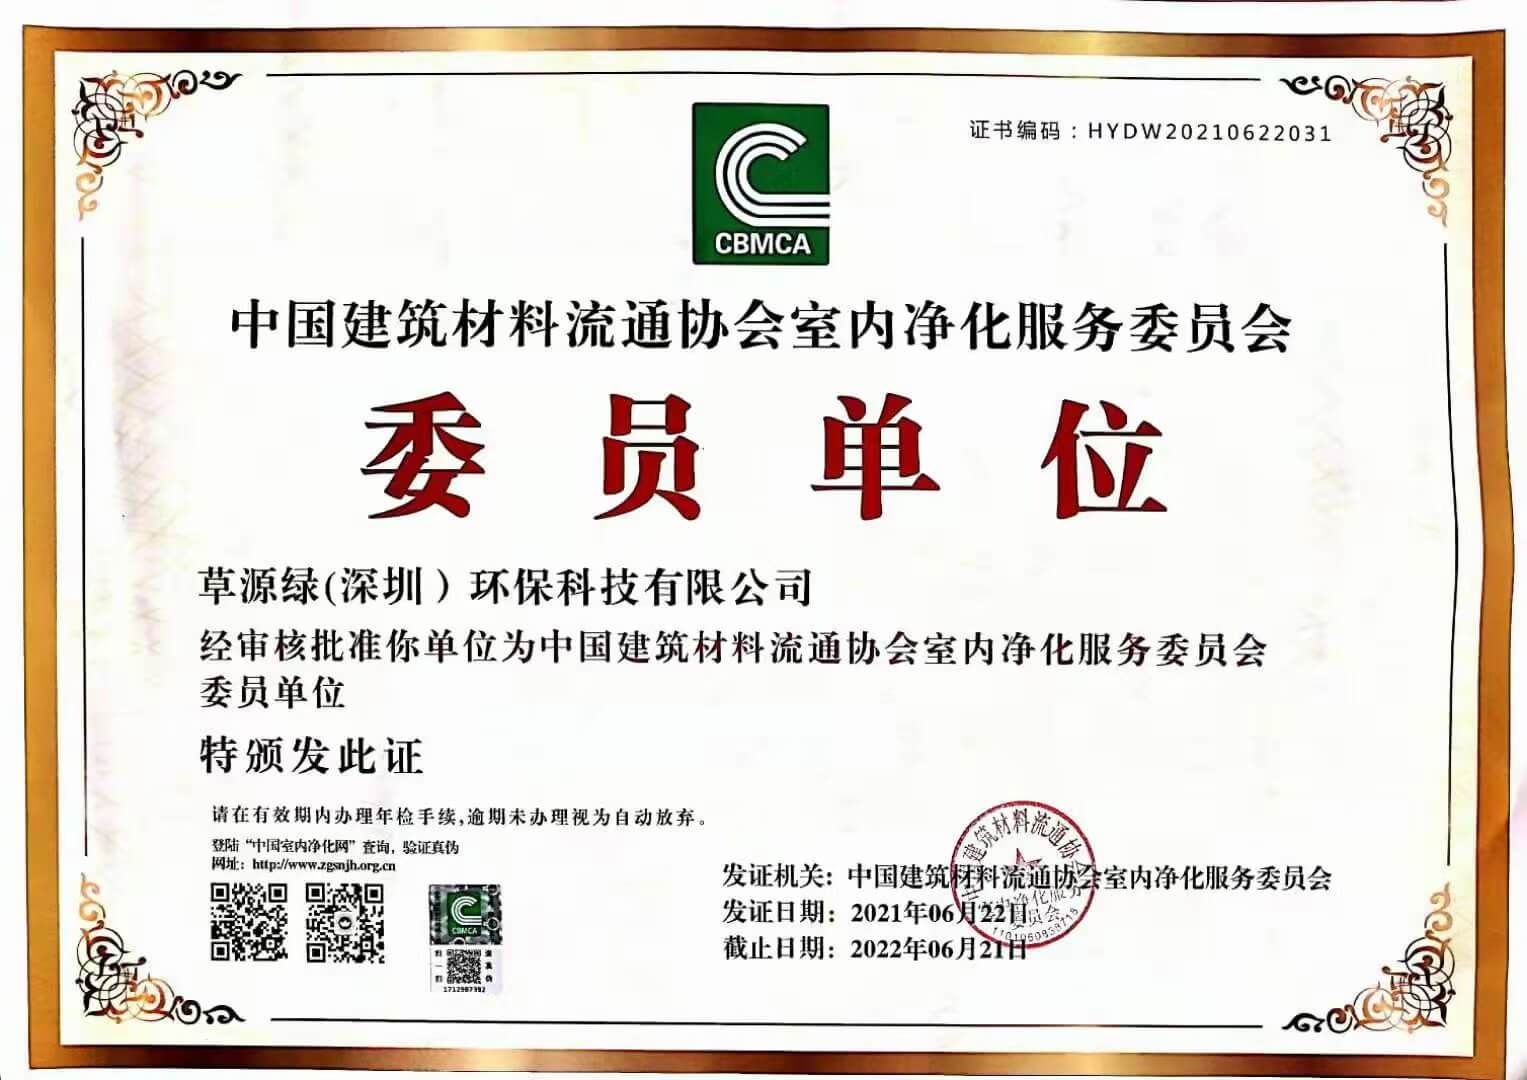 中国建筑材料流通协会室内净化服务委员会委员单位